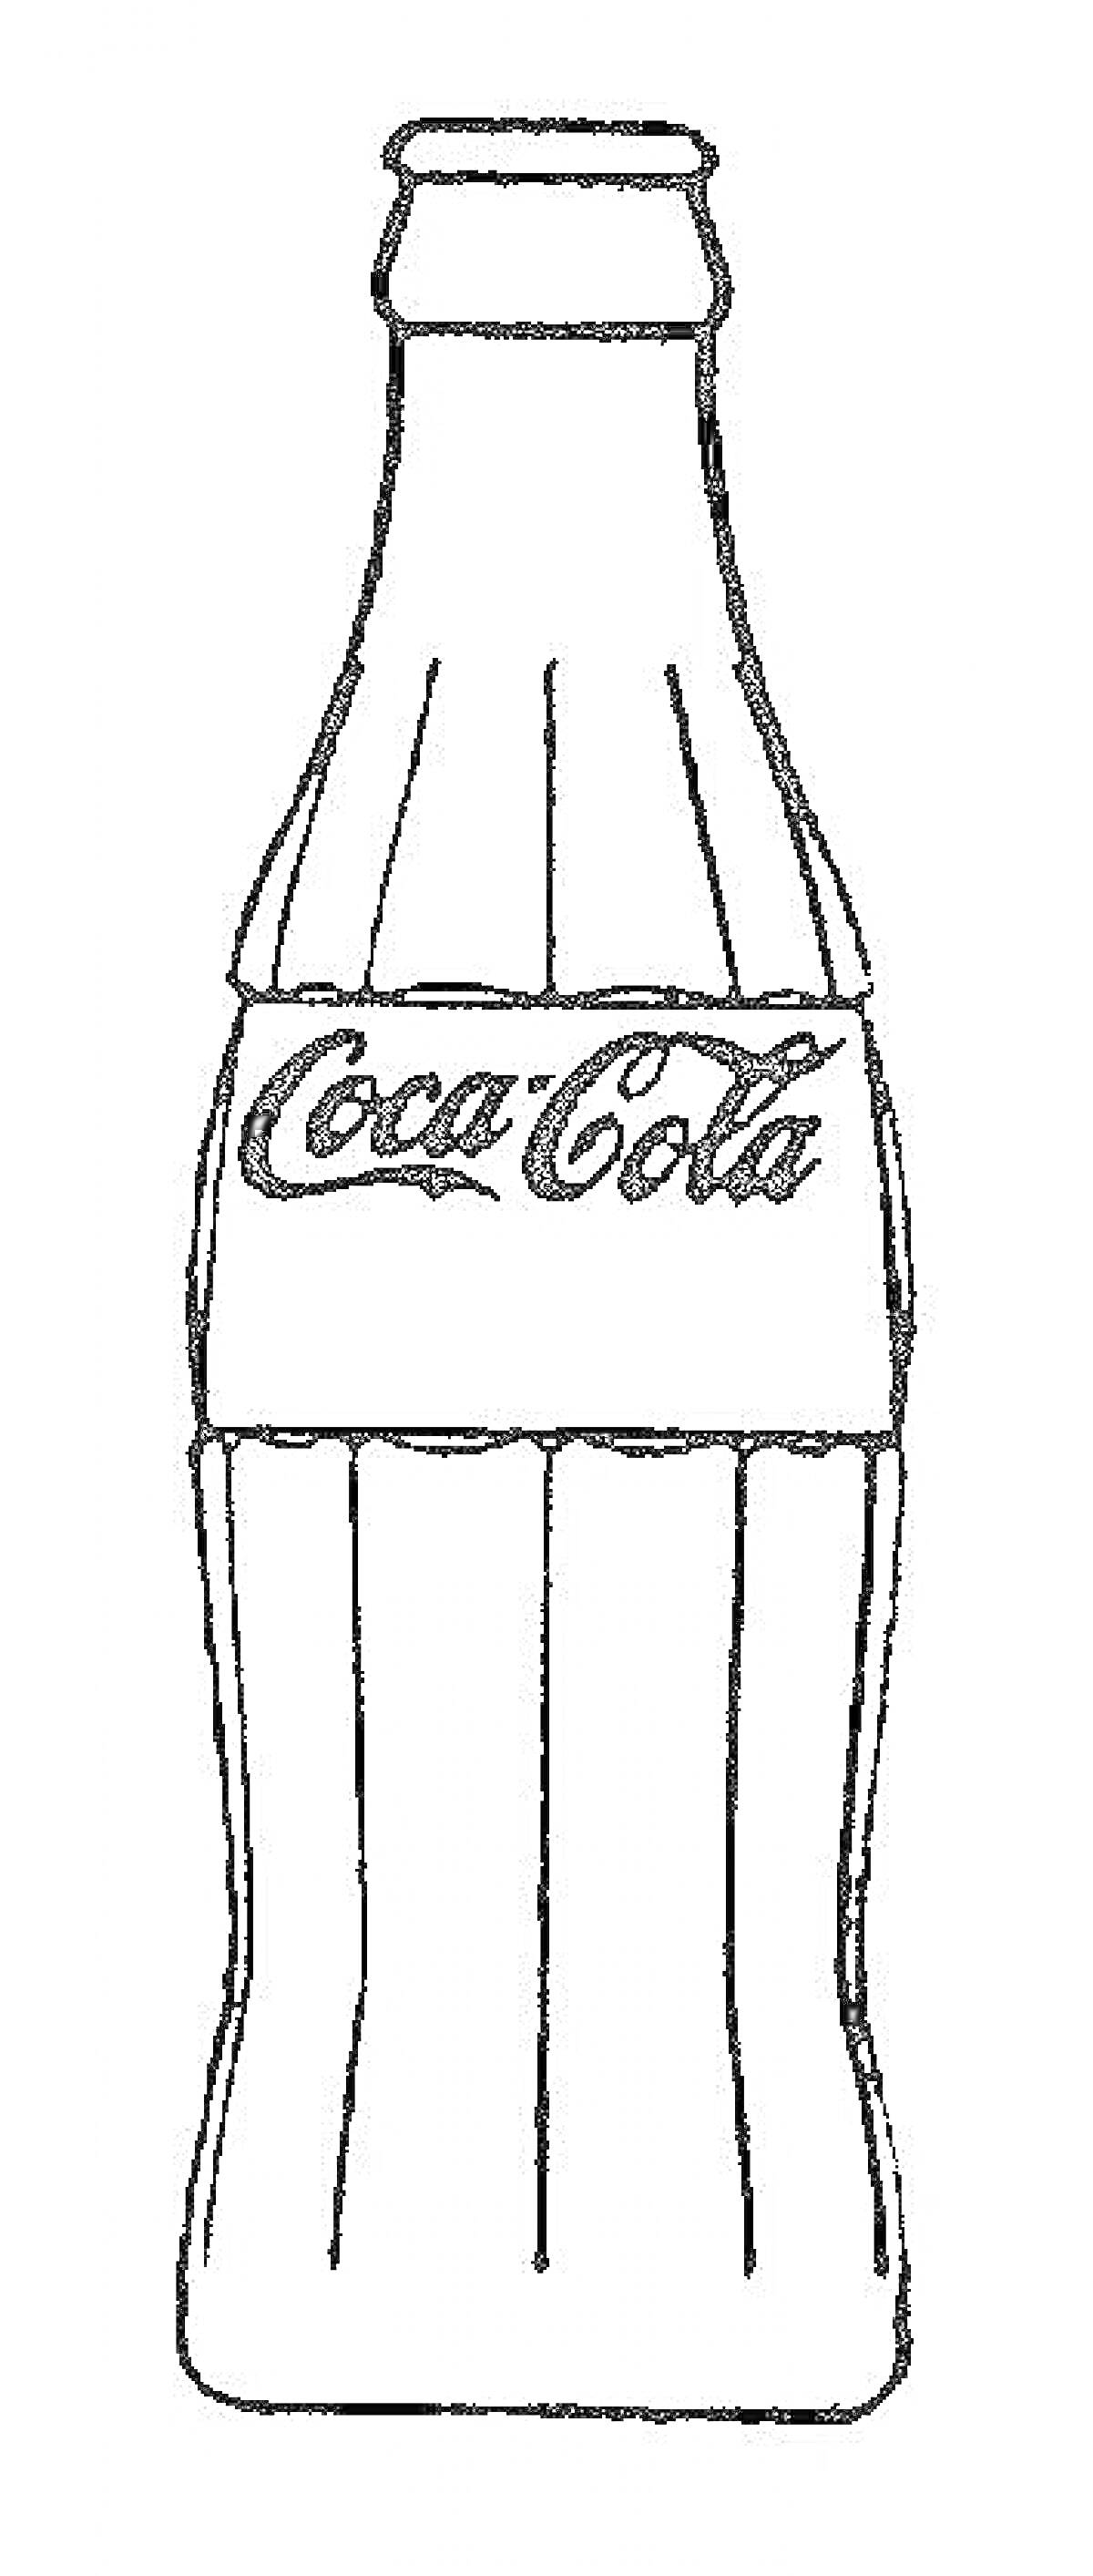 Раскраска Бутылка Coca-Cola для раскрашивания